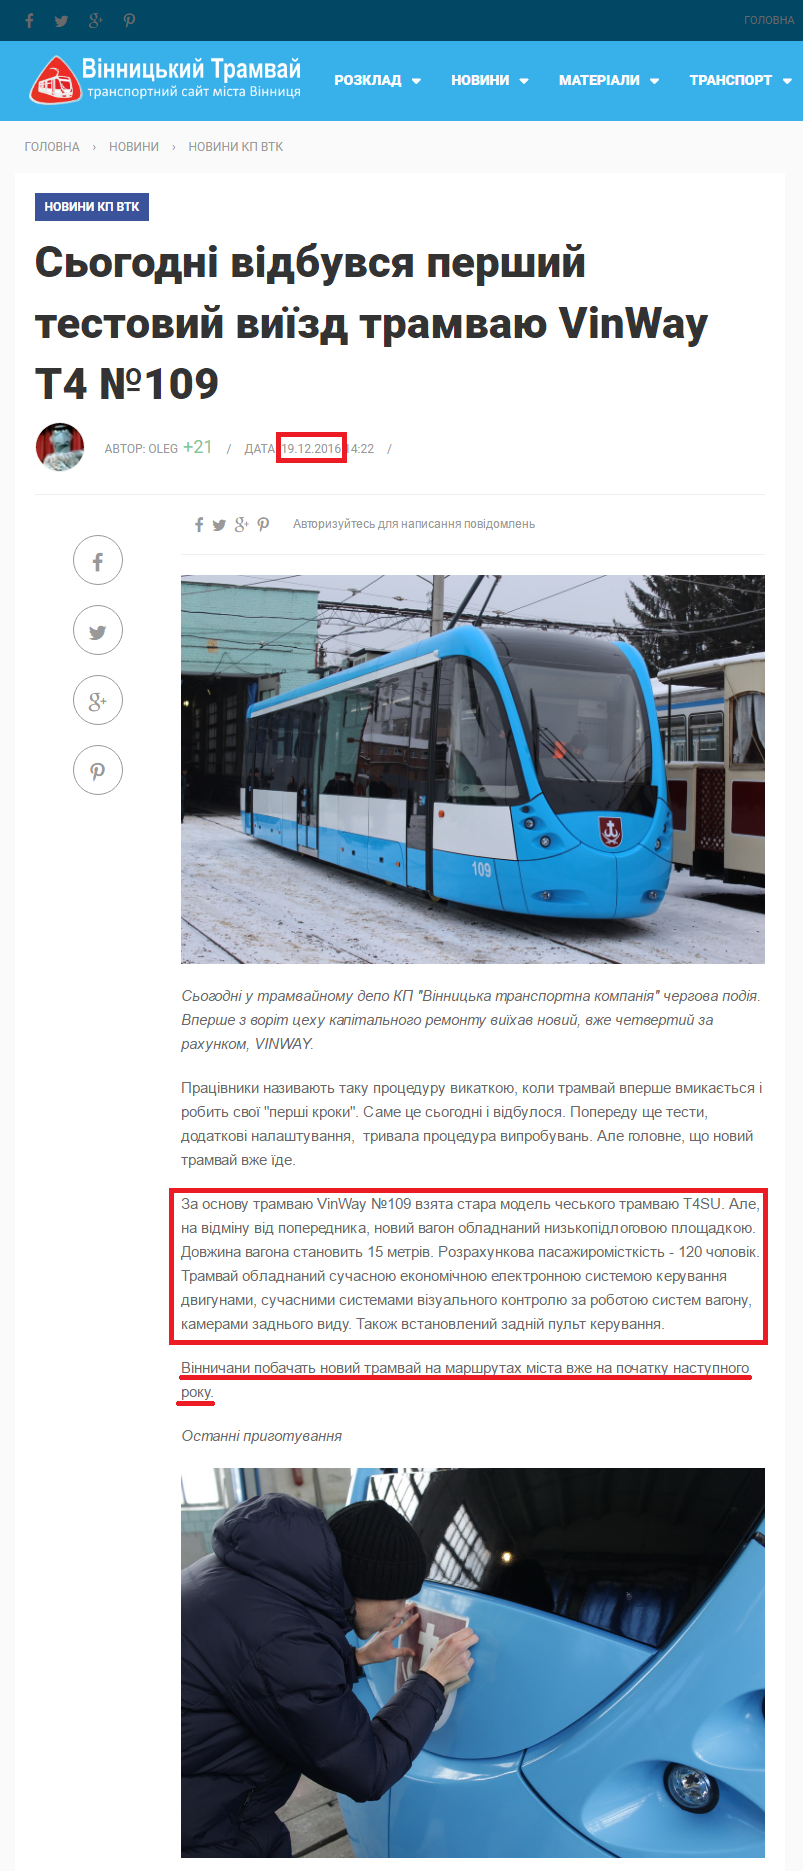 http://depo.vn.ua/news/sogodni-vidbuvsya-pershyy-testovyy-vyyizd-tramvayu-vinway-t4-no109